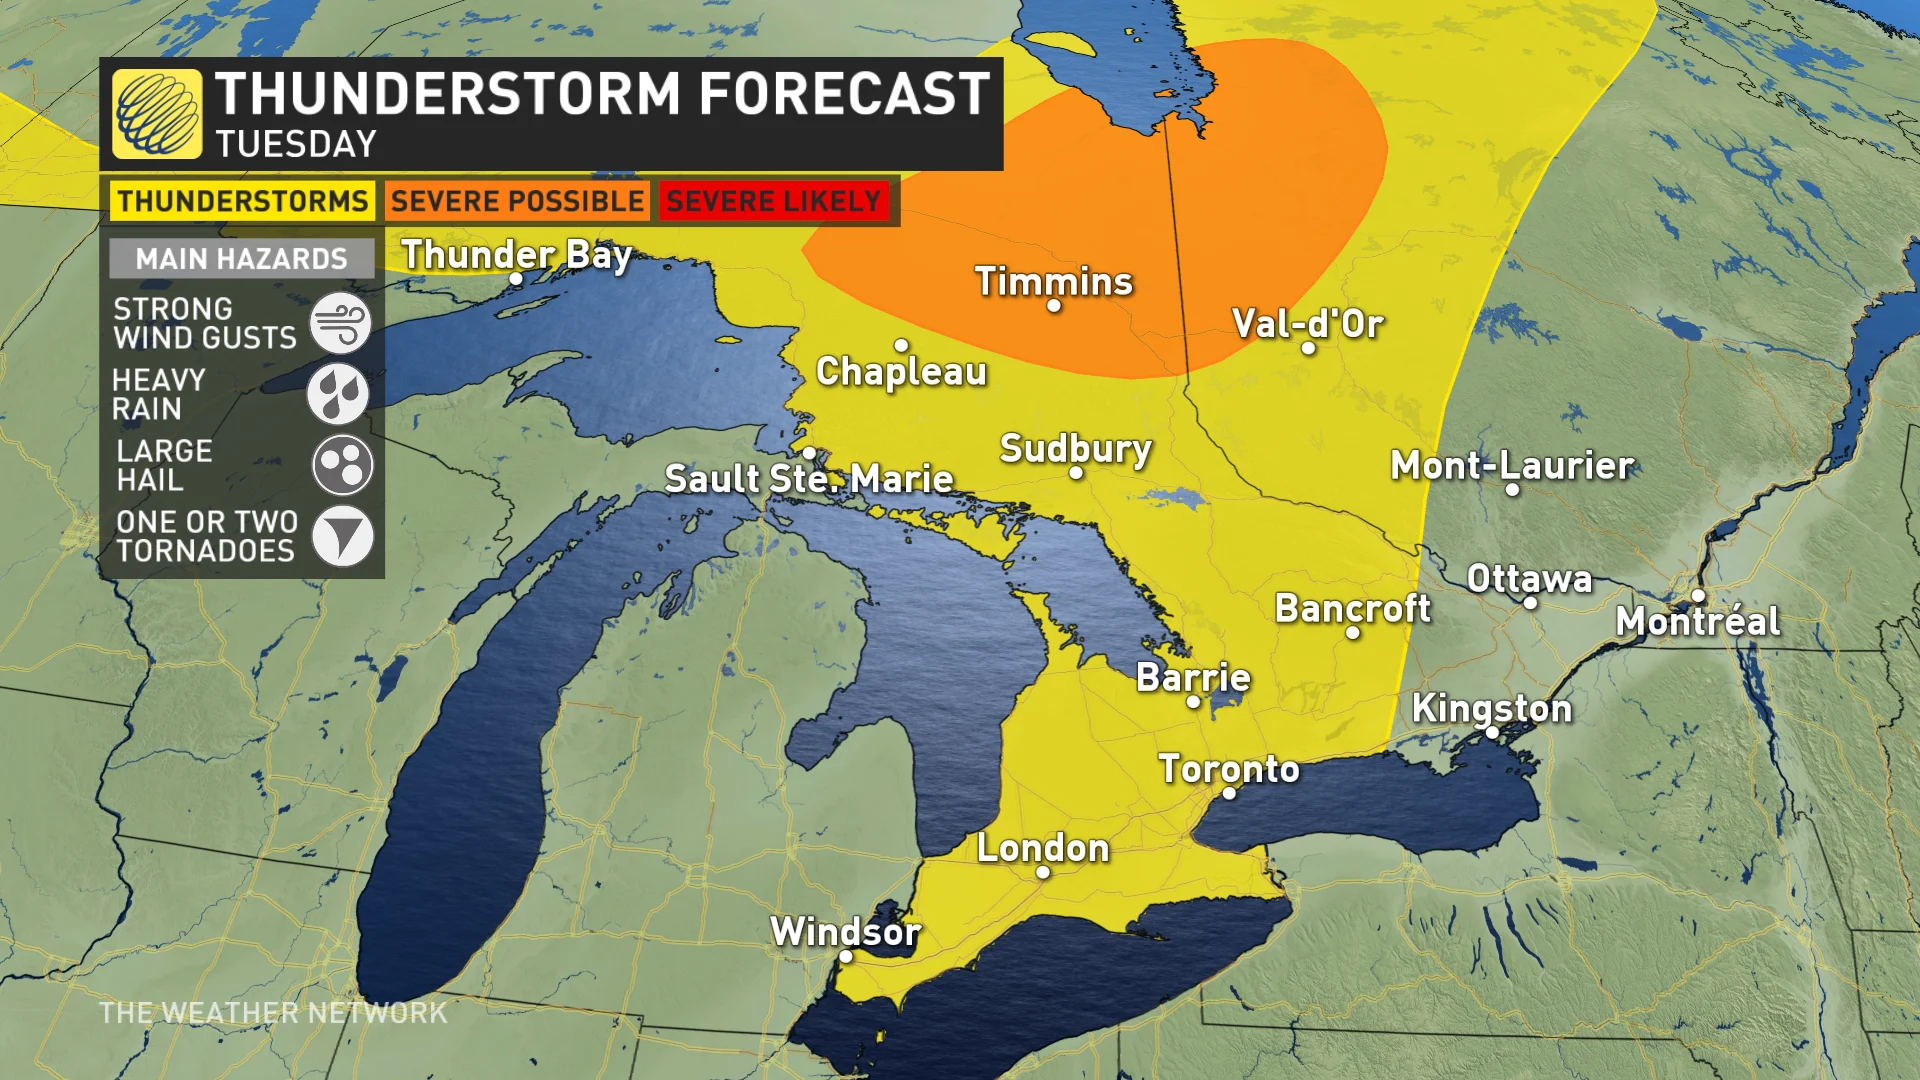 Baron - Ontario storm risk updated - June 25